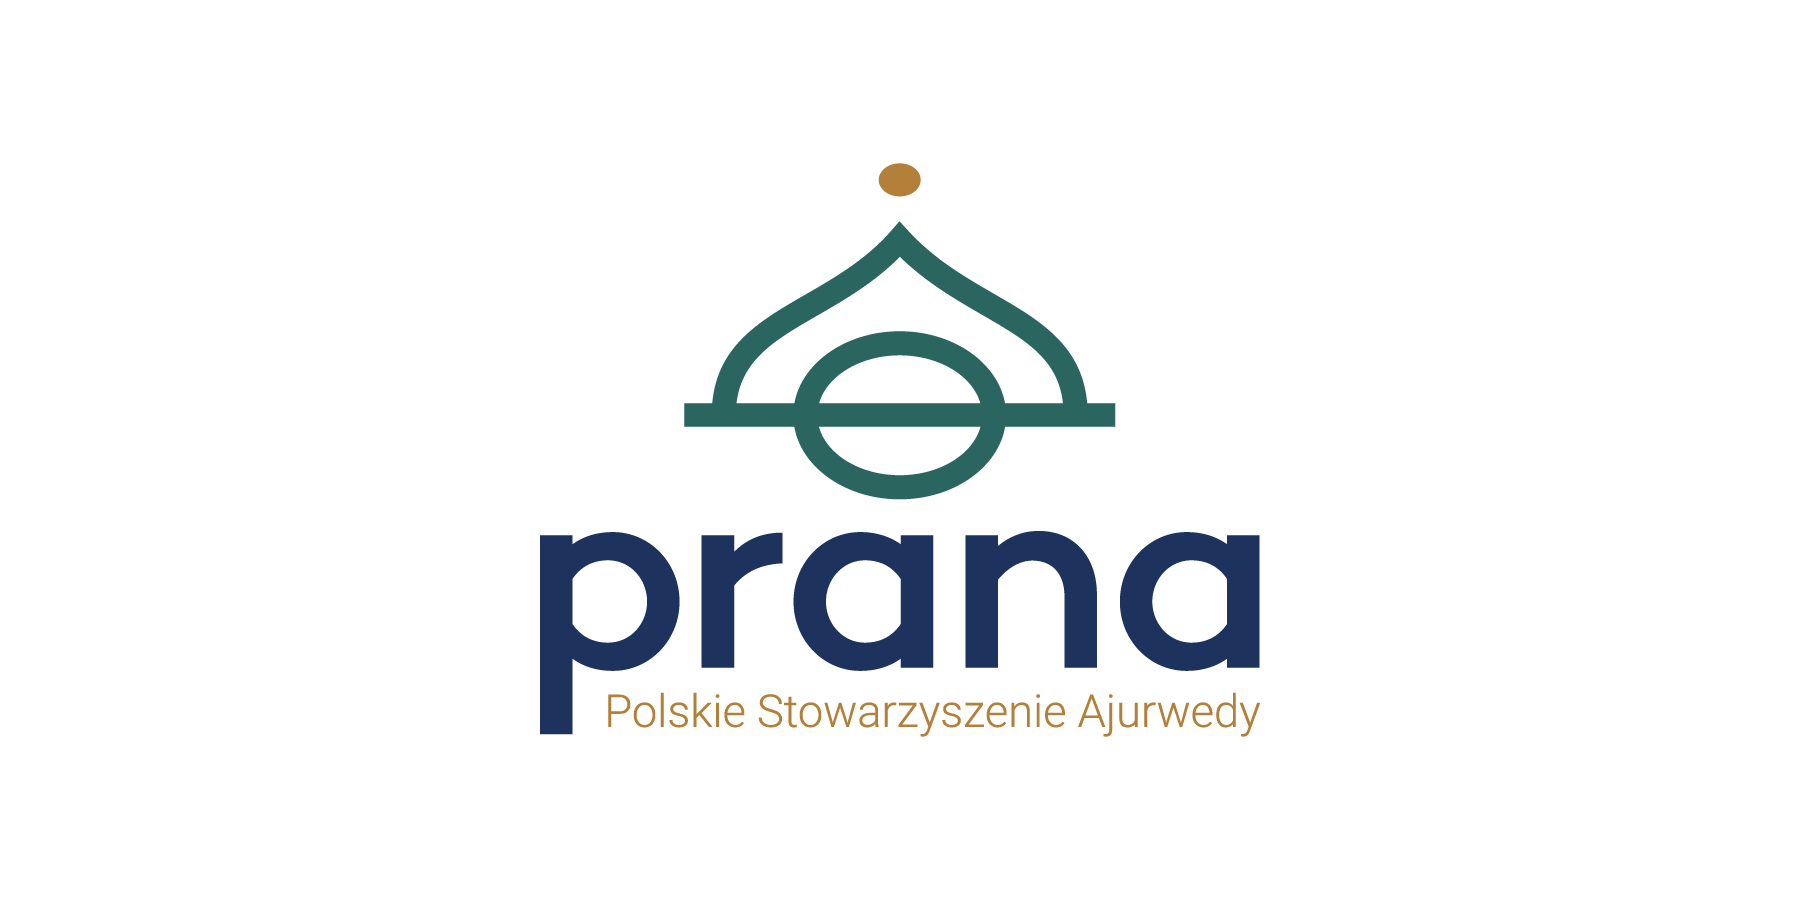 Polskie Stowarzyszenie Ajurwedy PRANA